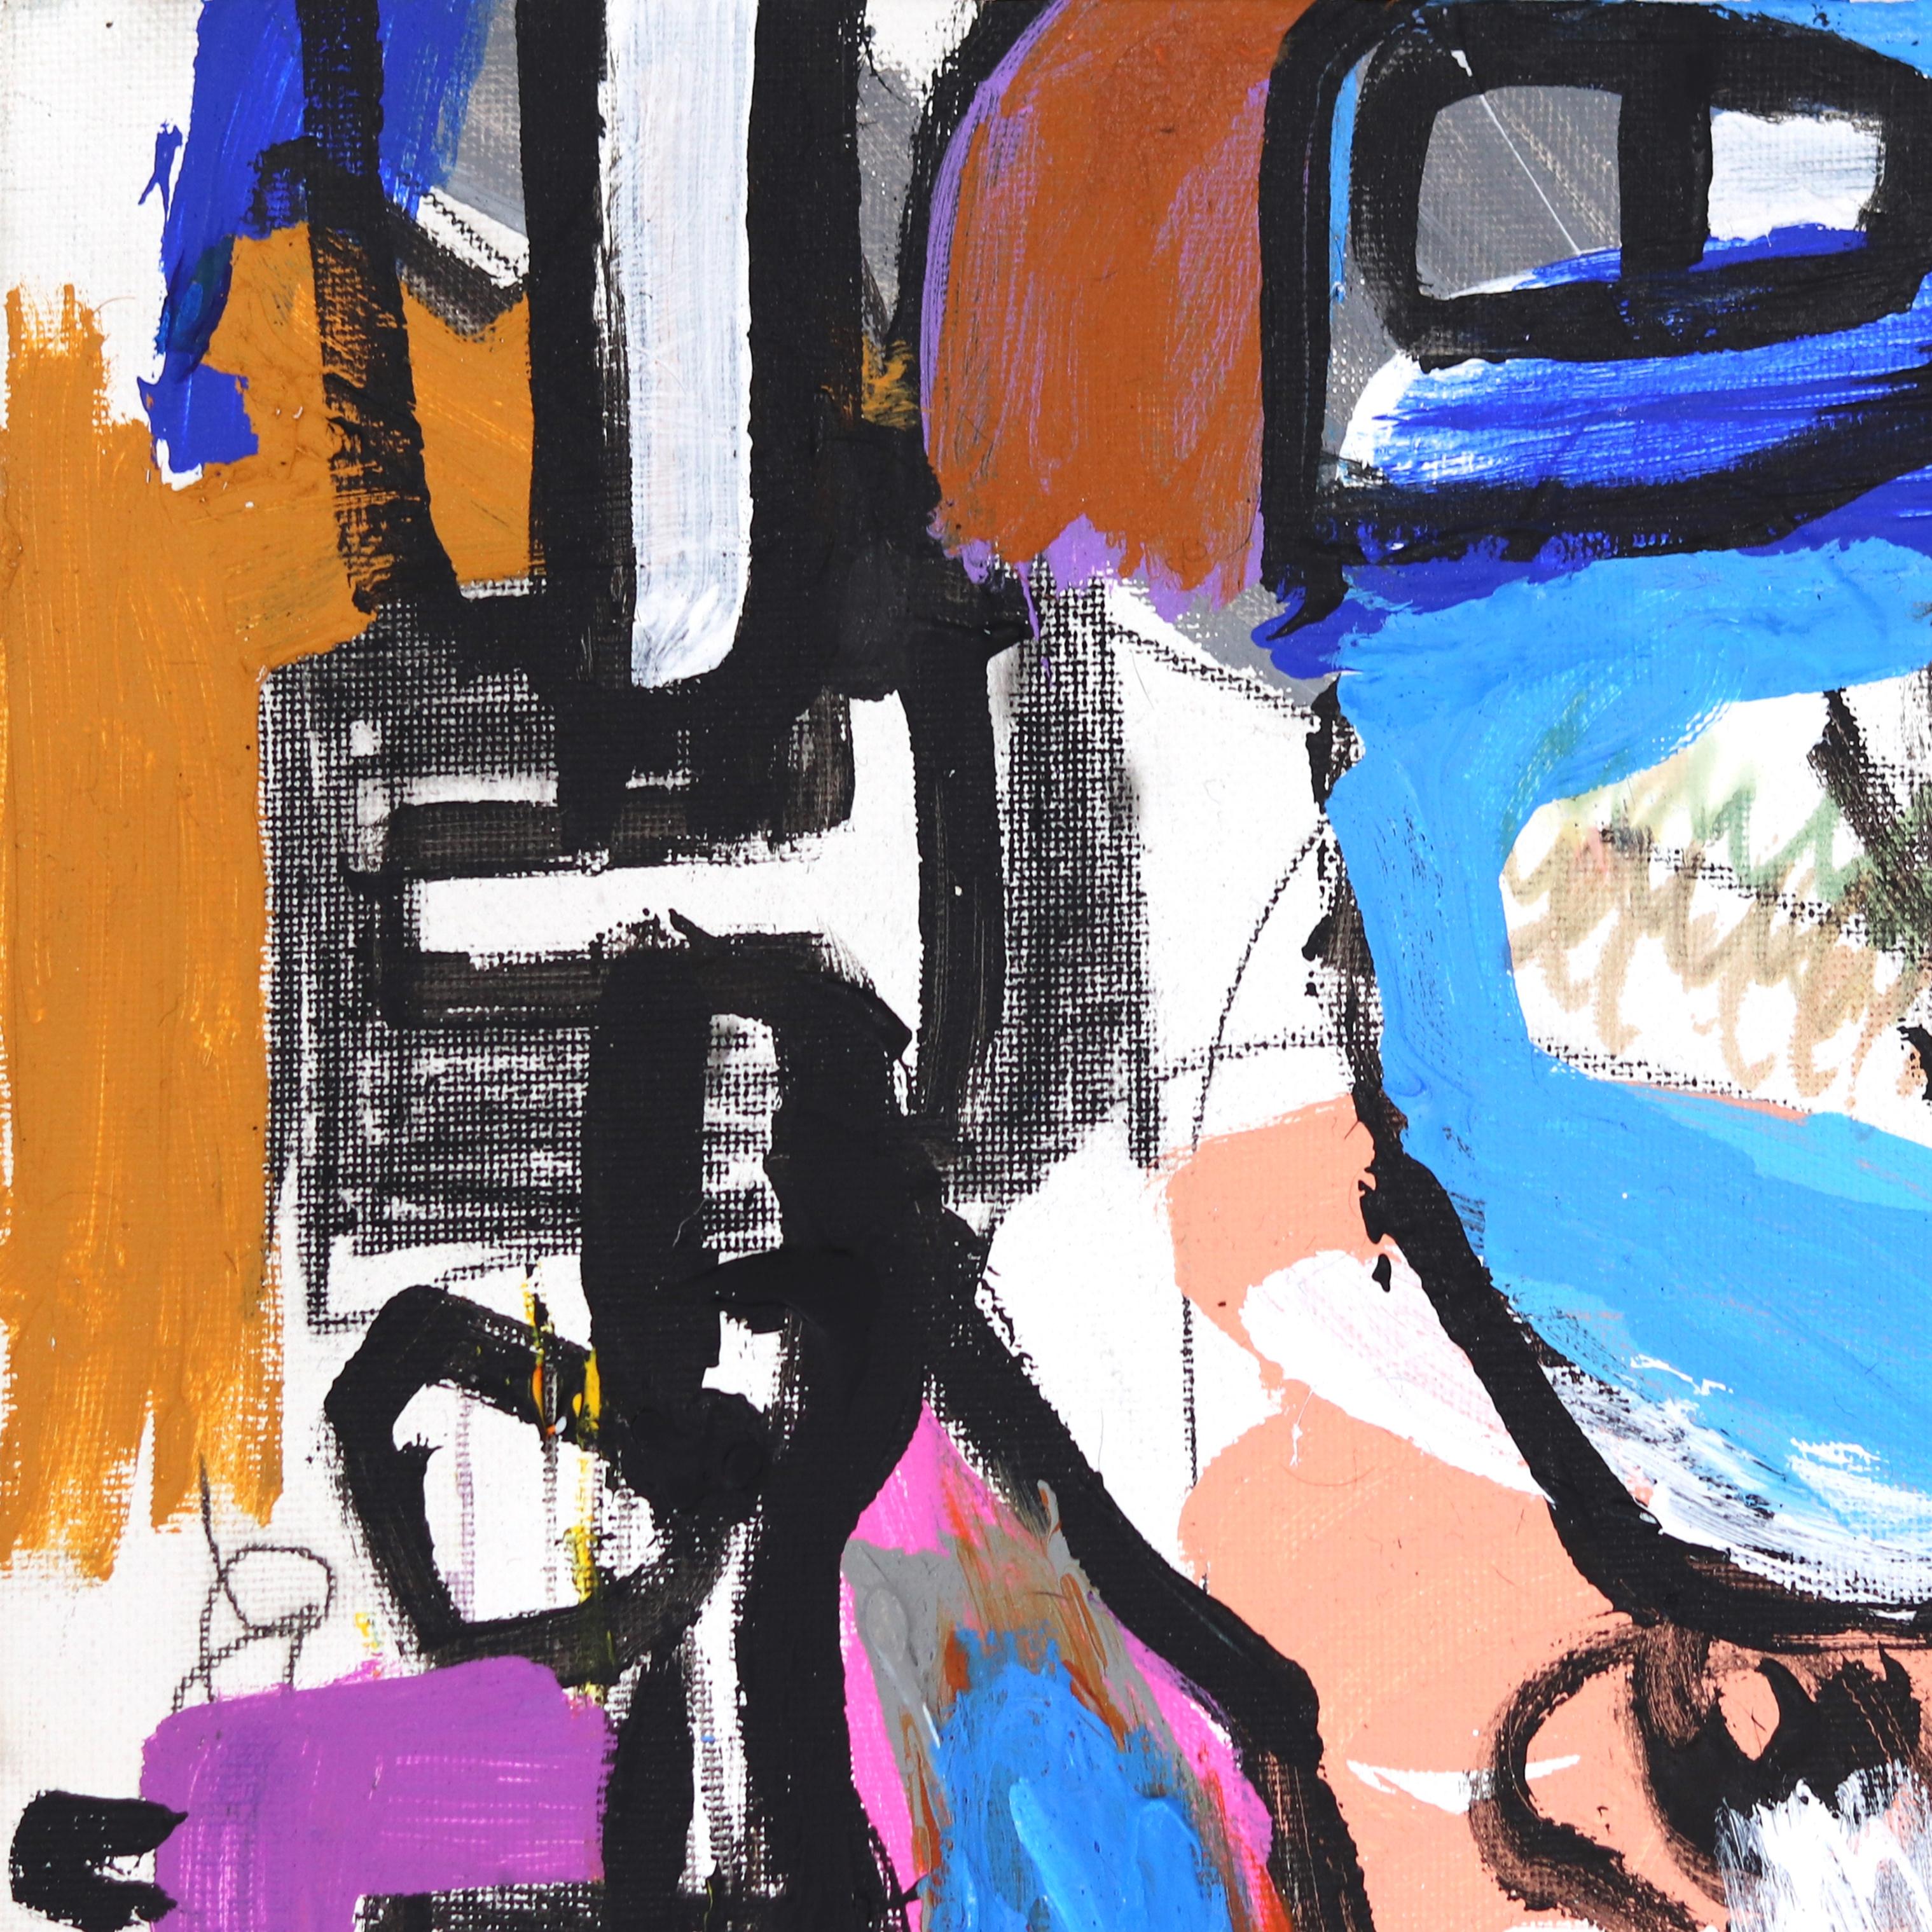 In Arms - Original Colorful Mixed Media - Art abstrait vibrant et spontané - Painting de Jonas Fisch